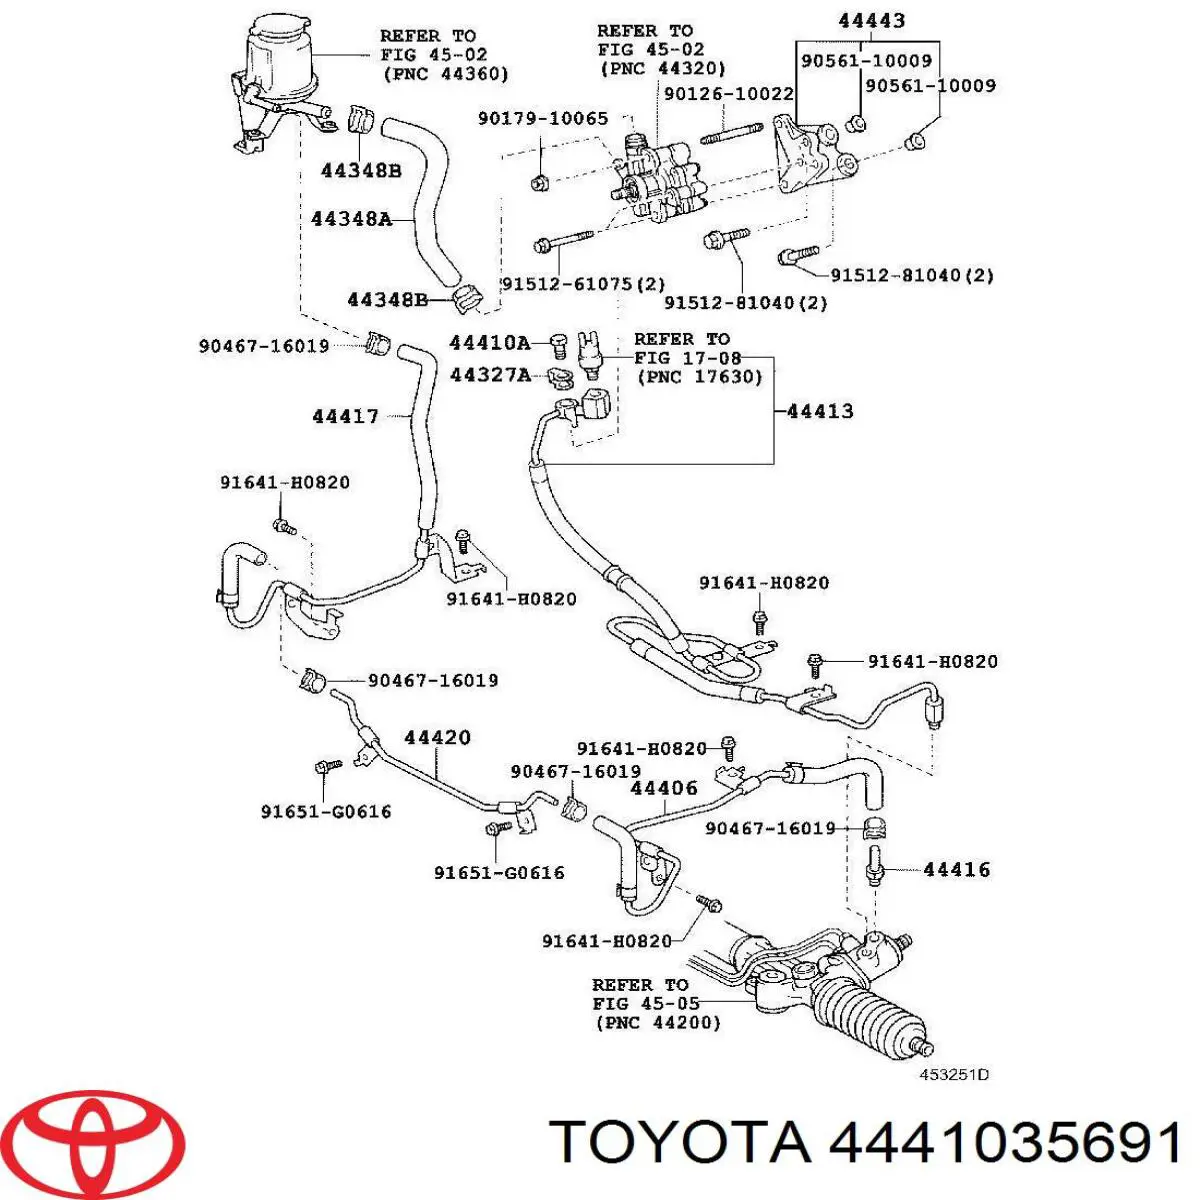 4441035691 Toyota mangueira da direção hidrâulica assistida de pressão alta desde a bomba até a régua (do mecanismo)